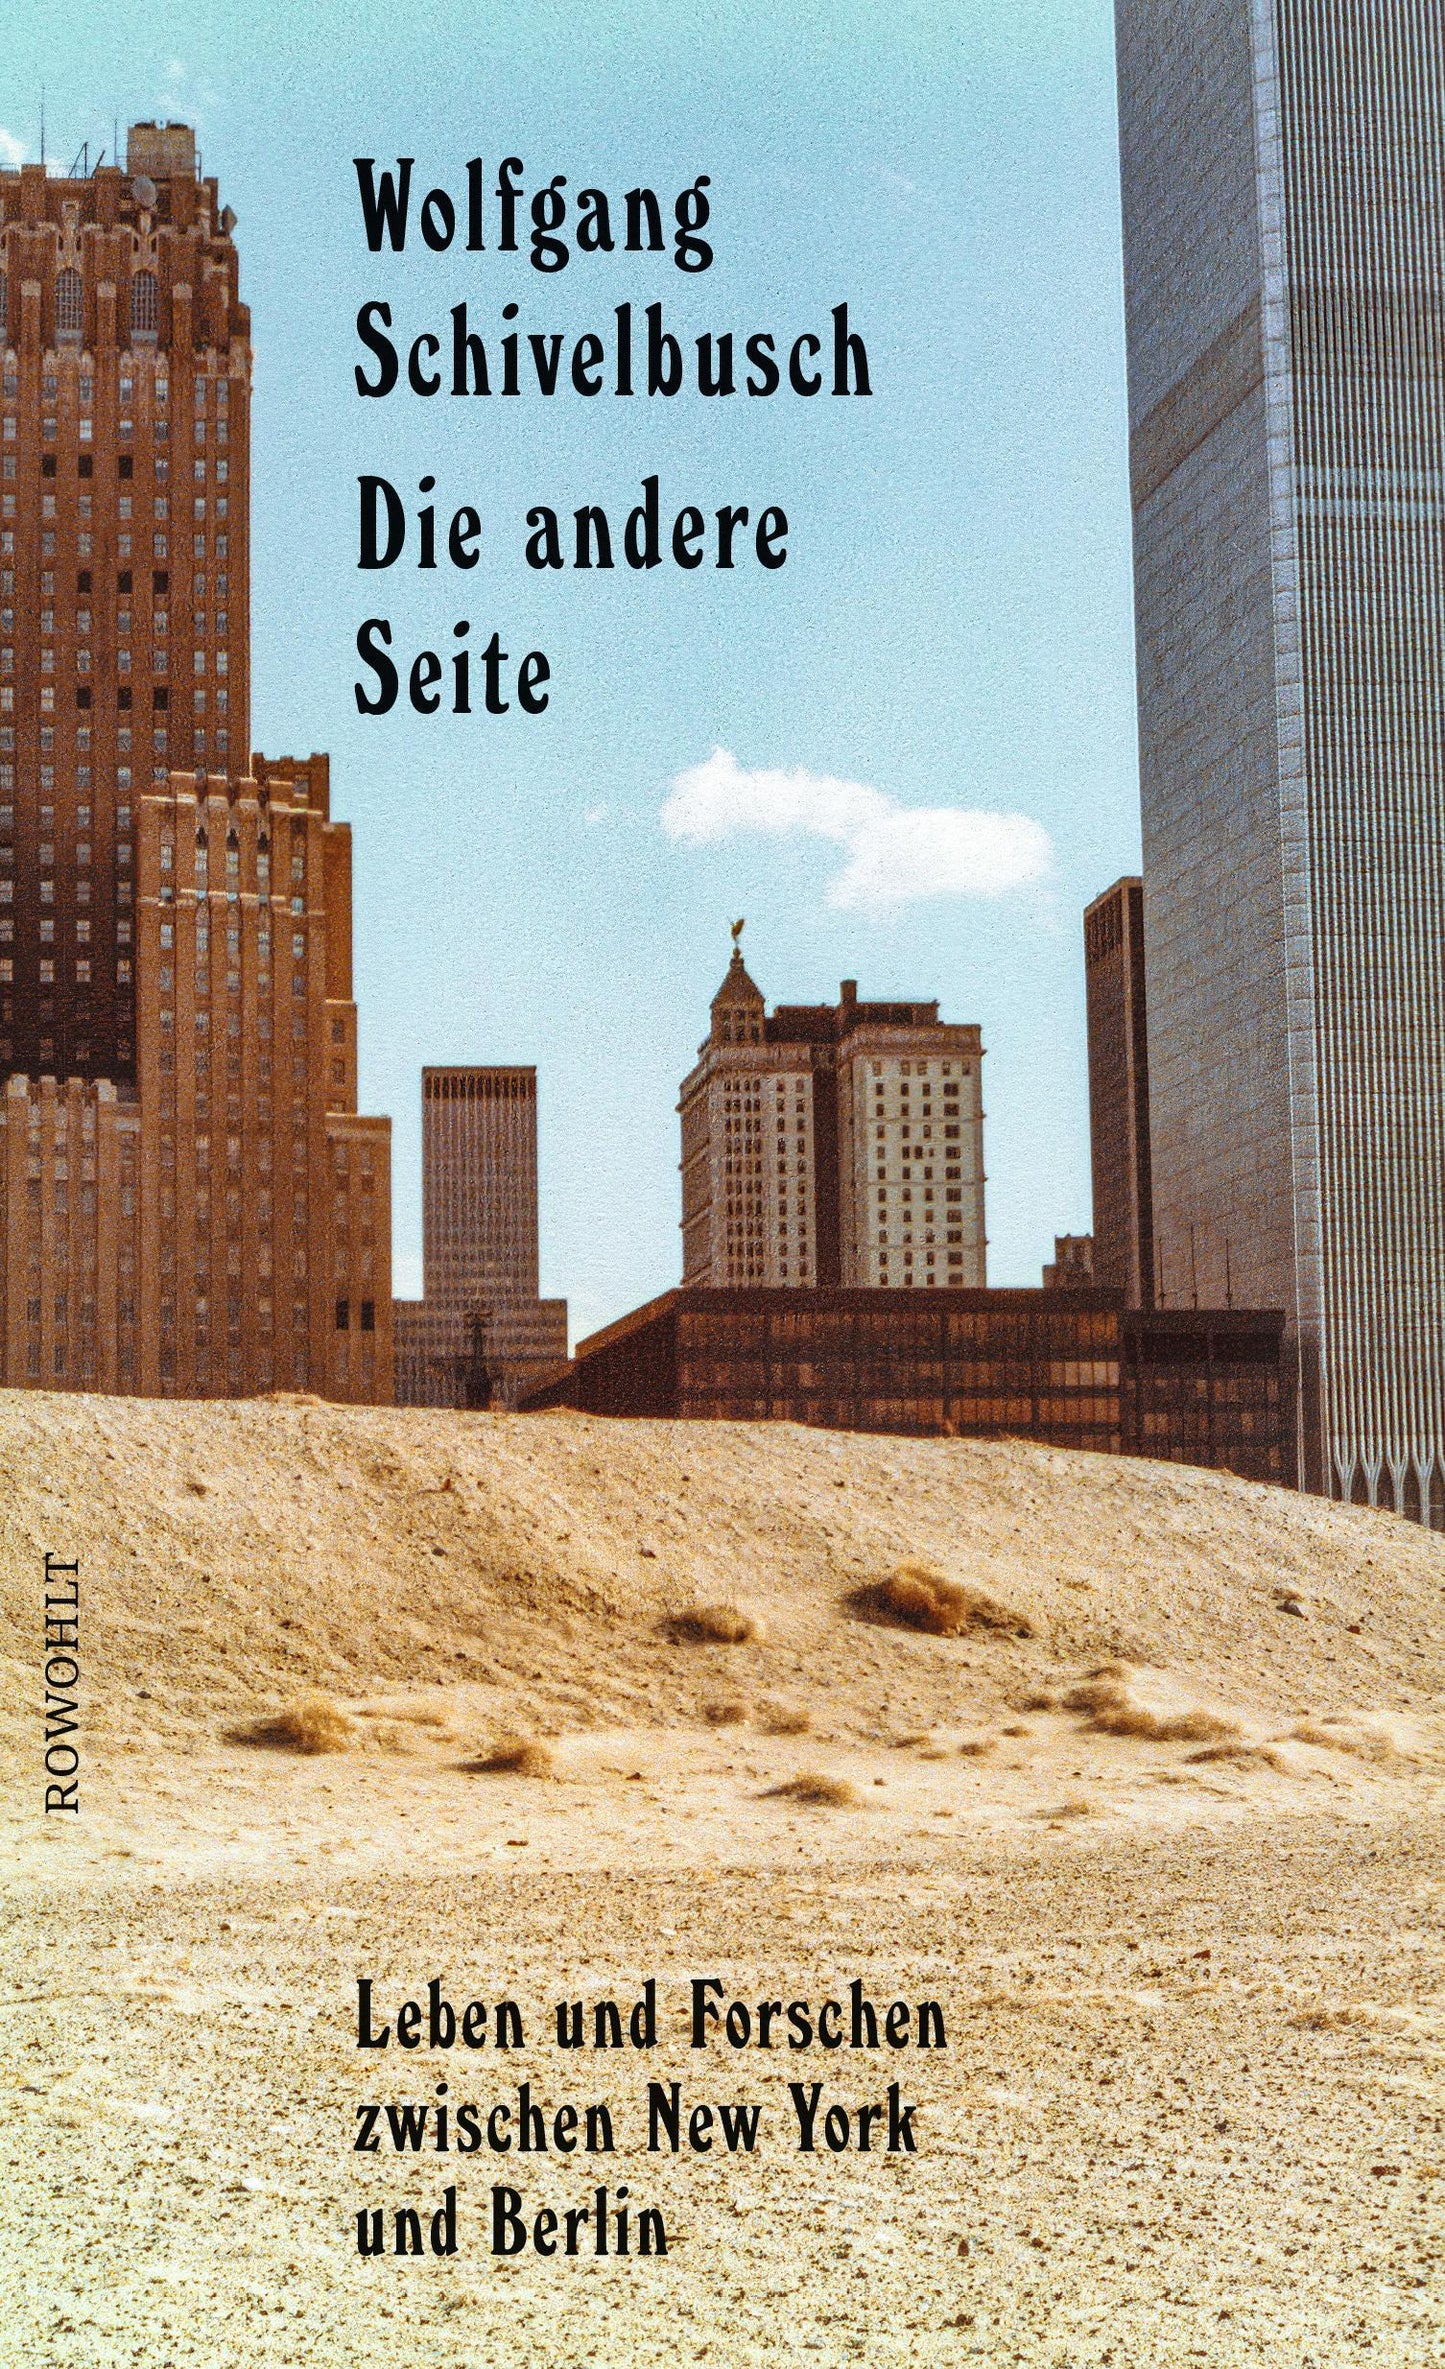 Die andere Seite: Leben und Forschen zwischen New York und Berlin